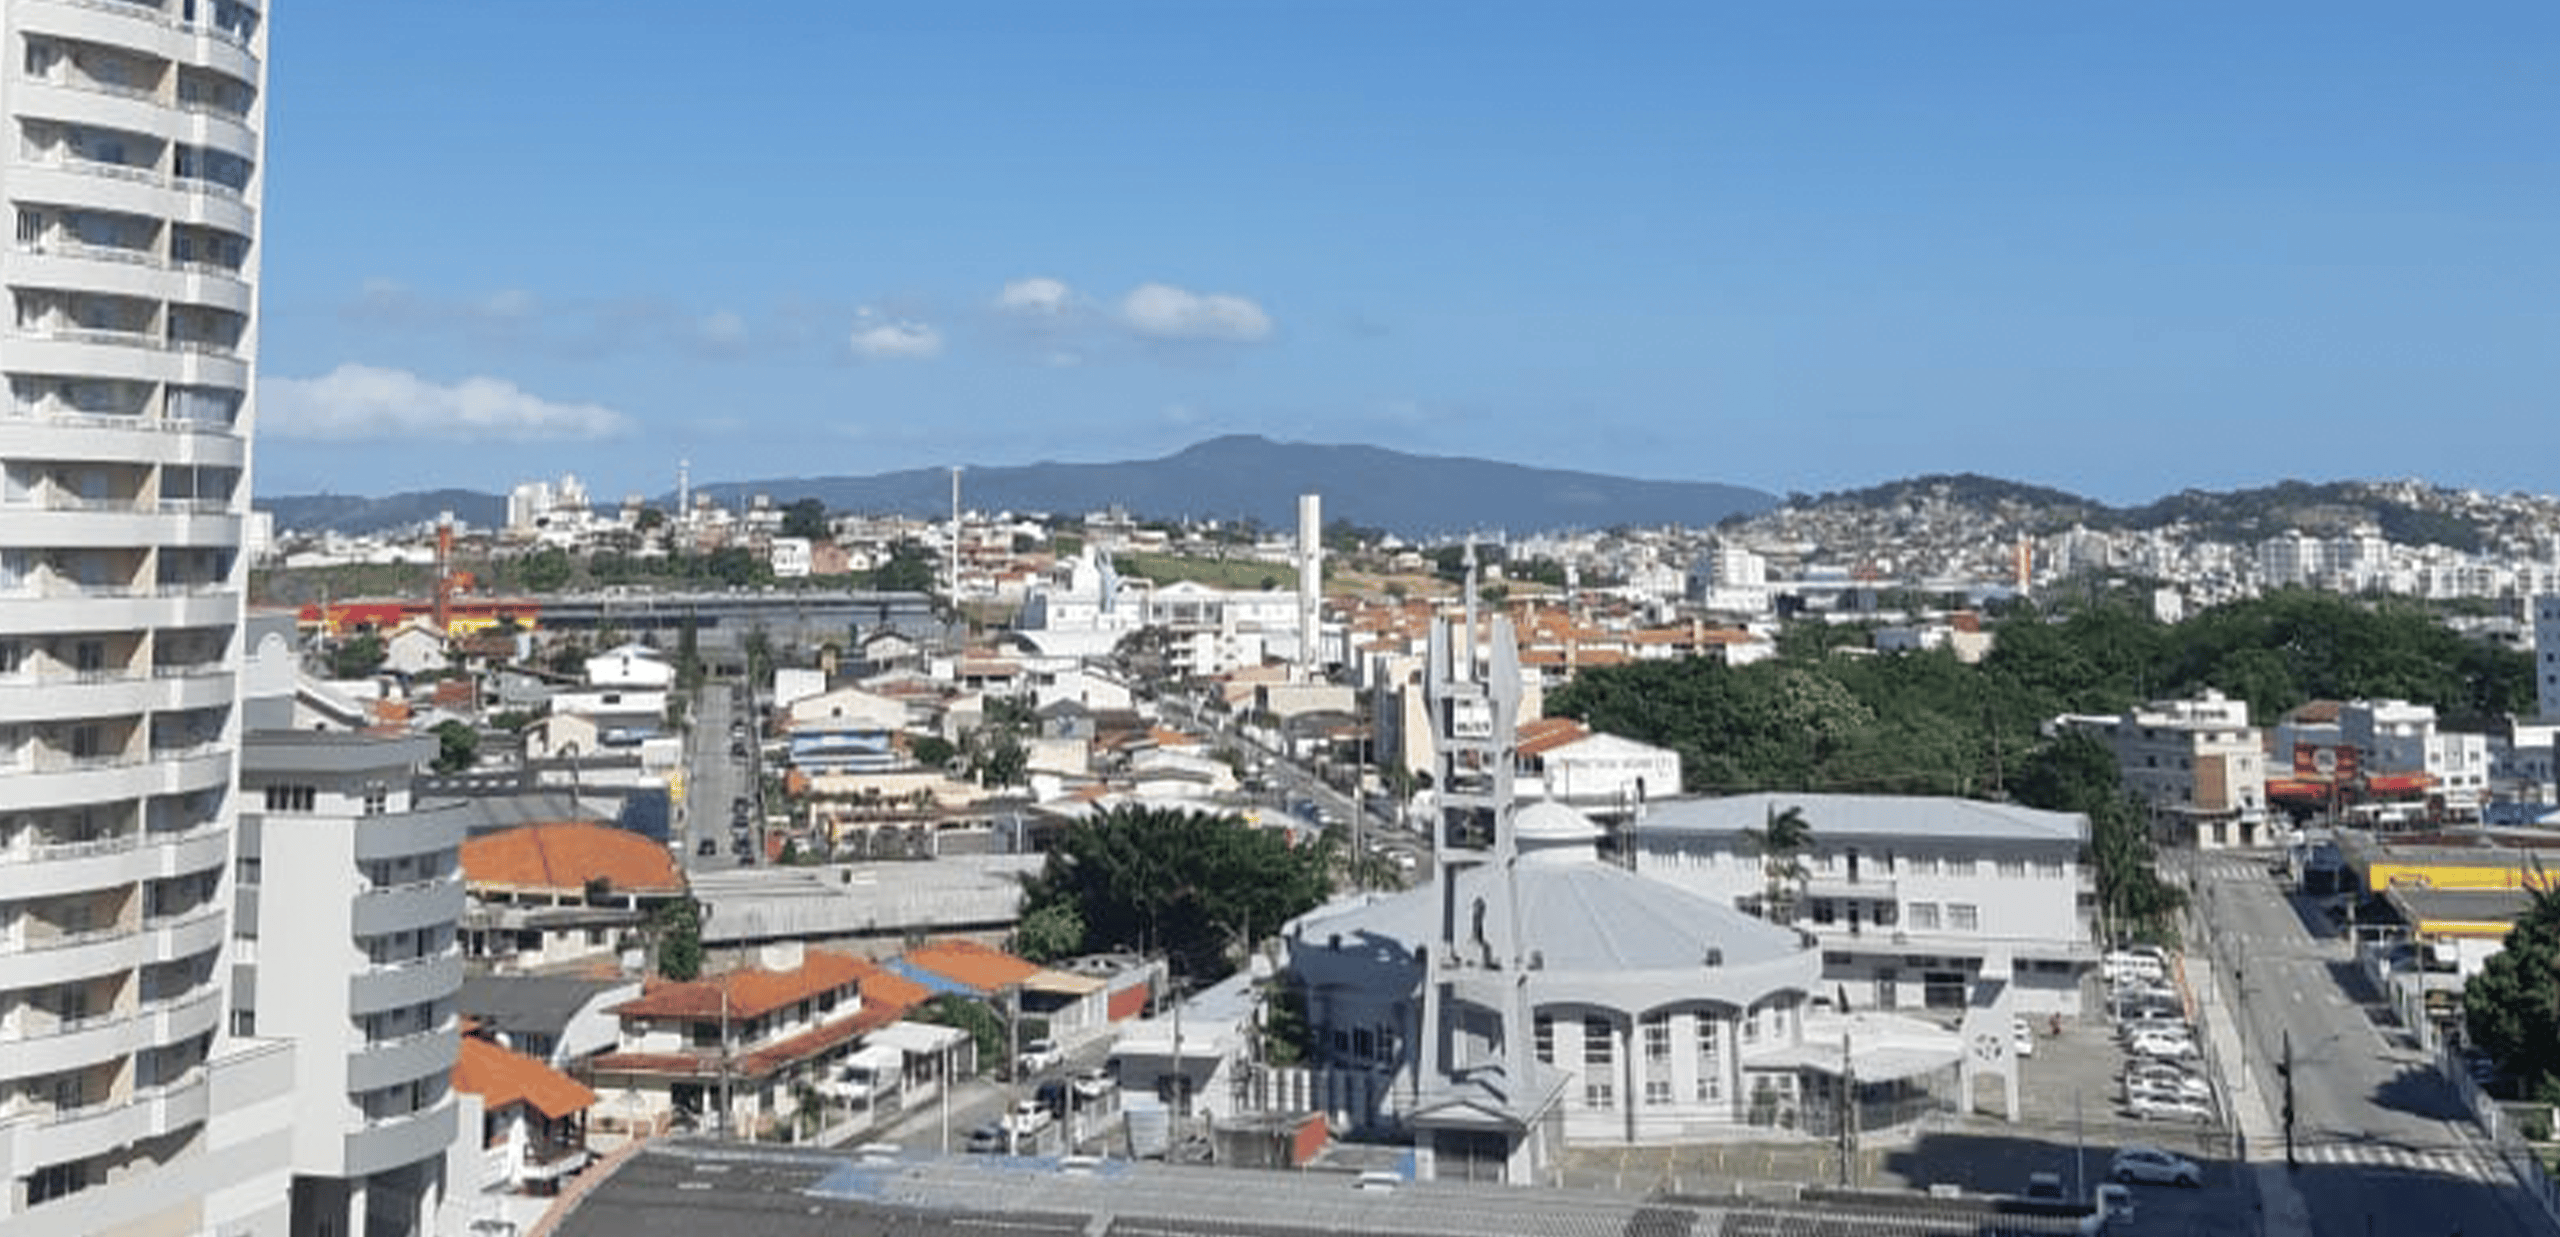 Vista panorâmica da cidade de São José em Santa Catarina